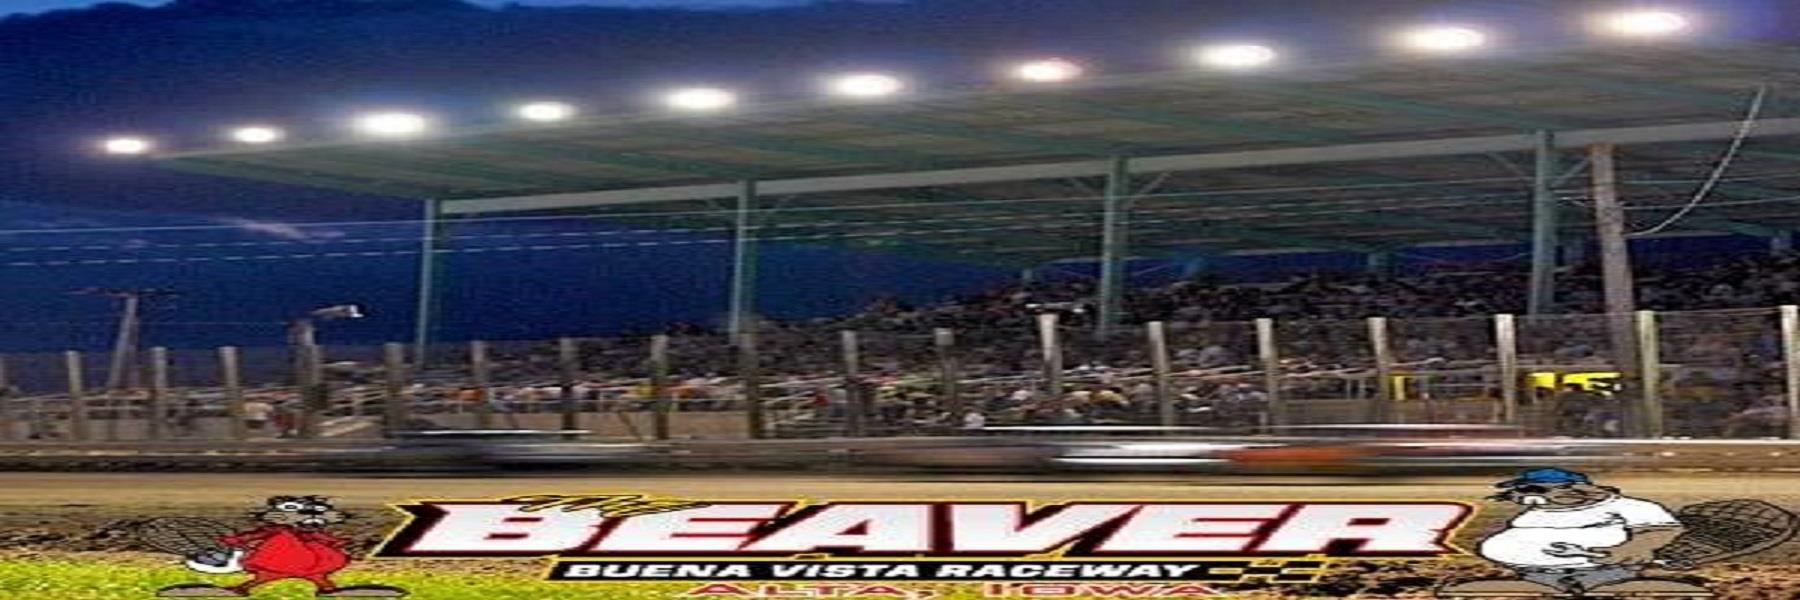 6/7/2023 - Buena Vista Raceway